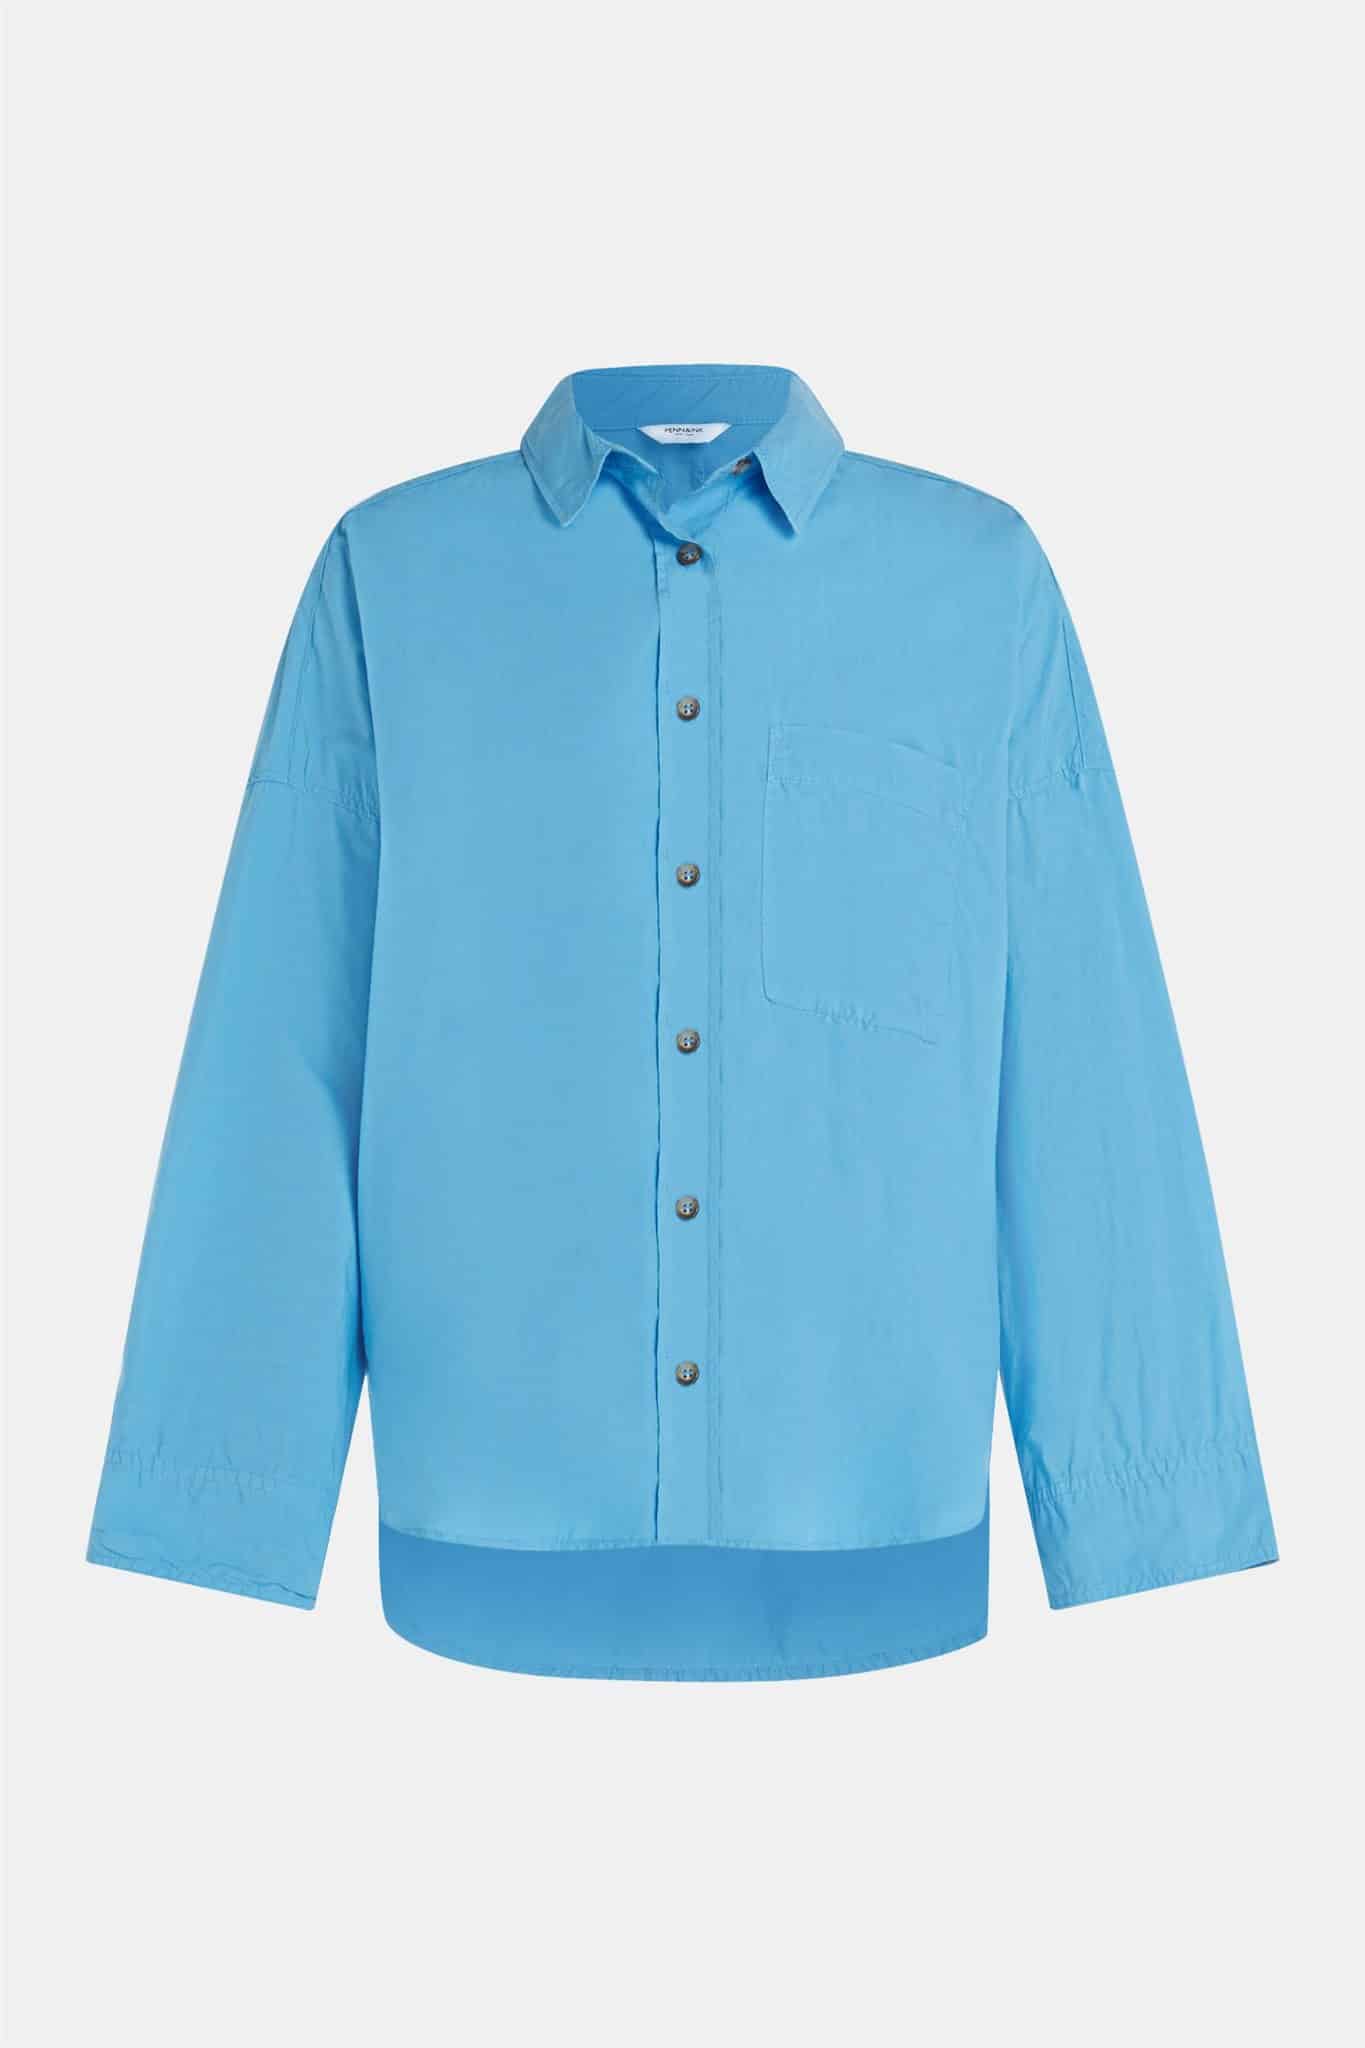 nadering trimmen overdrijven Penn & Ink blouse blue - Highlandsmode